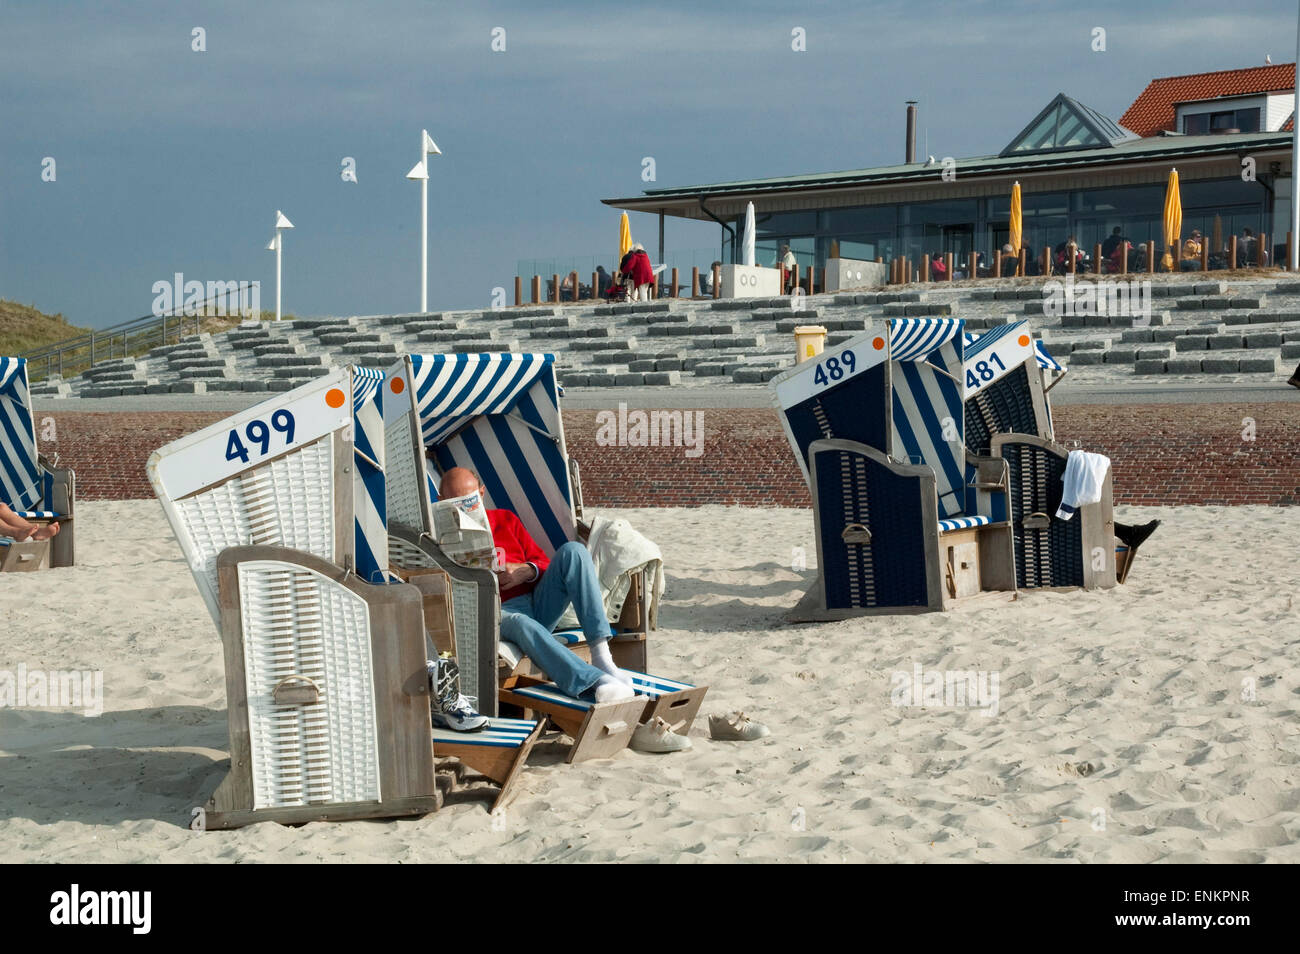 Liegestühle am Strand, Norderney, Nordsee-Insel, Ostfriesland, Niedersachsen, Deutschland Stockfoto